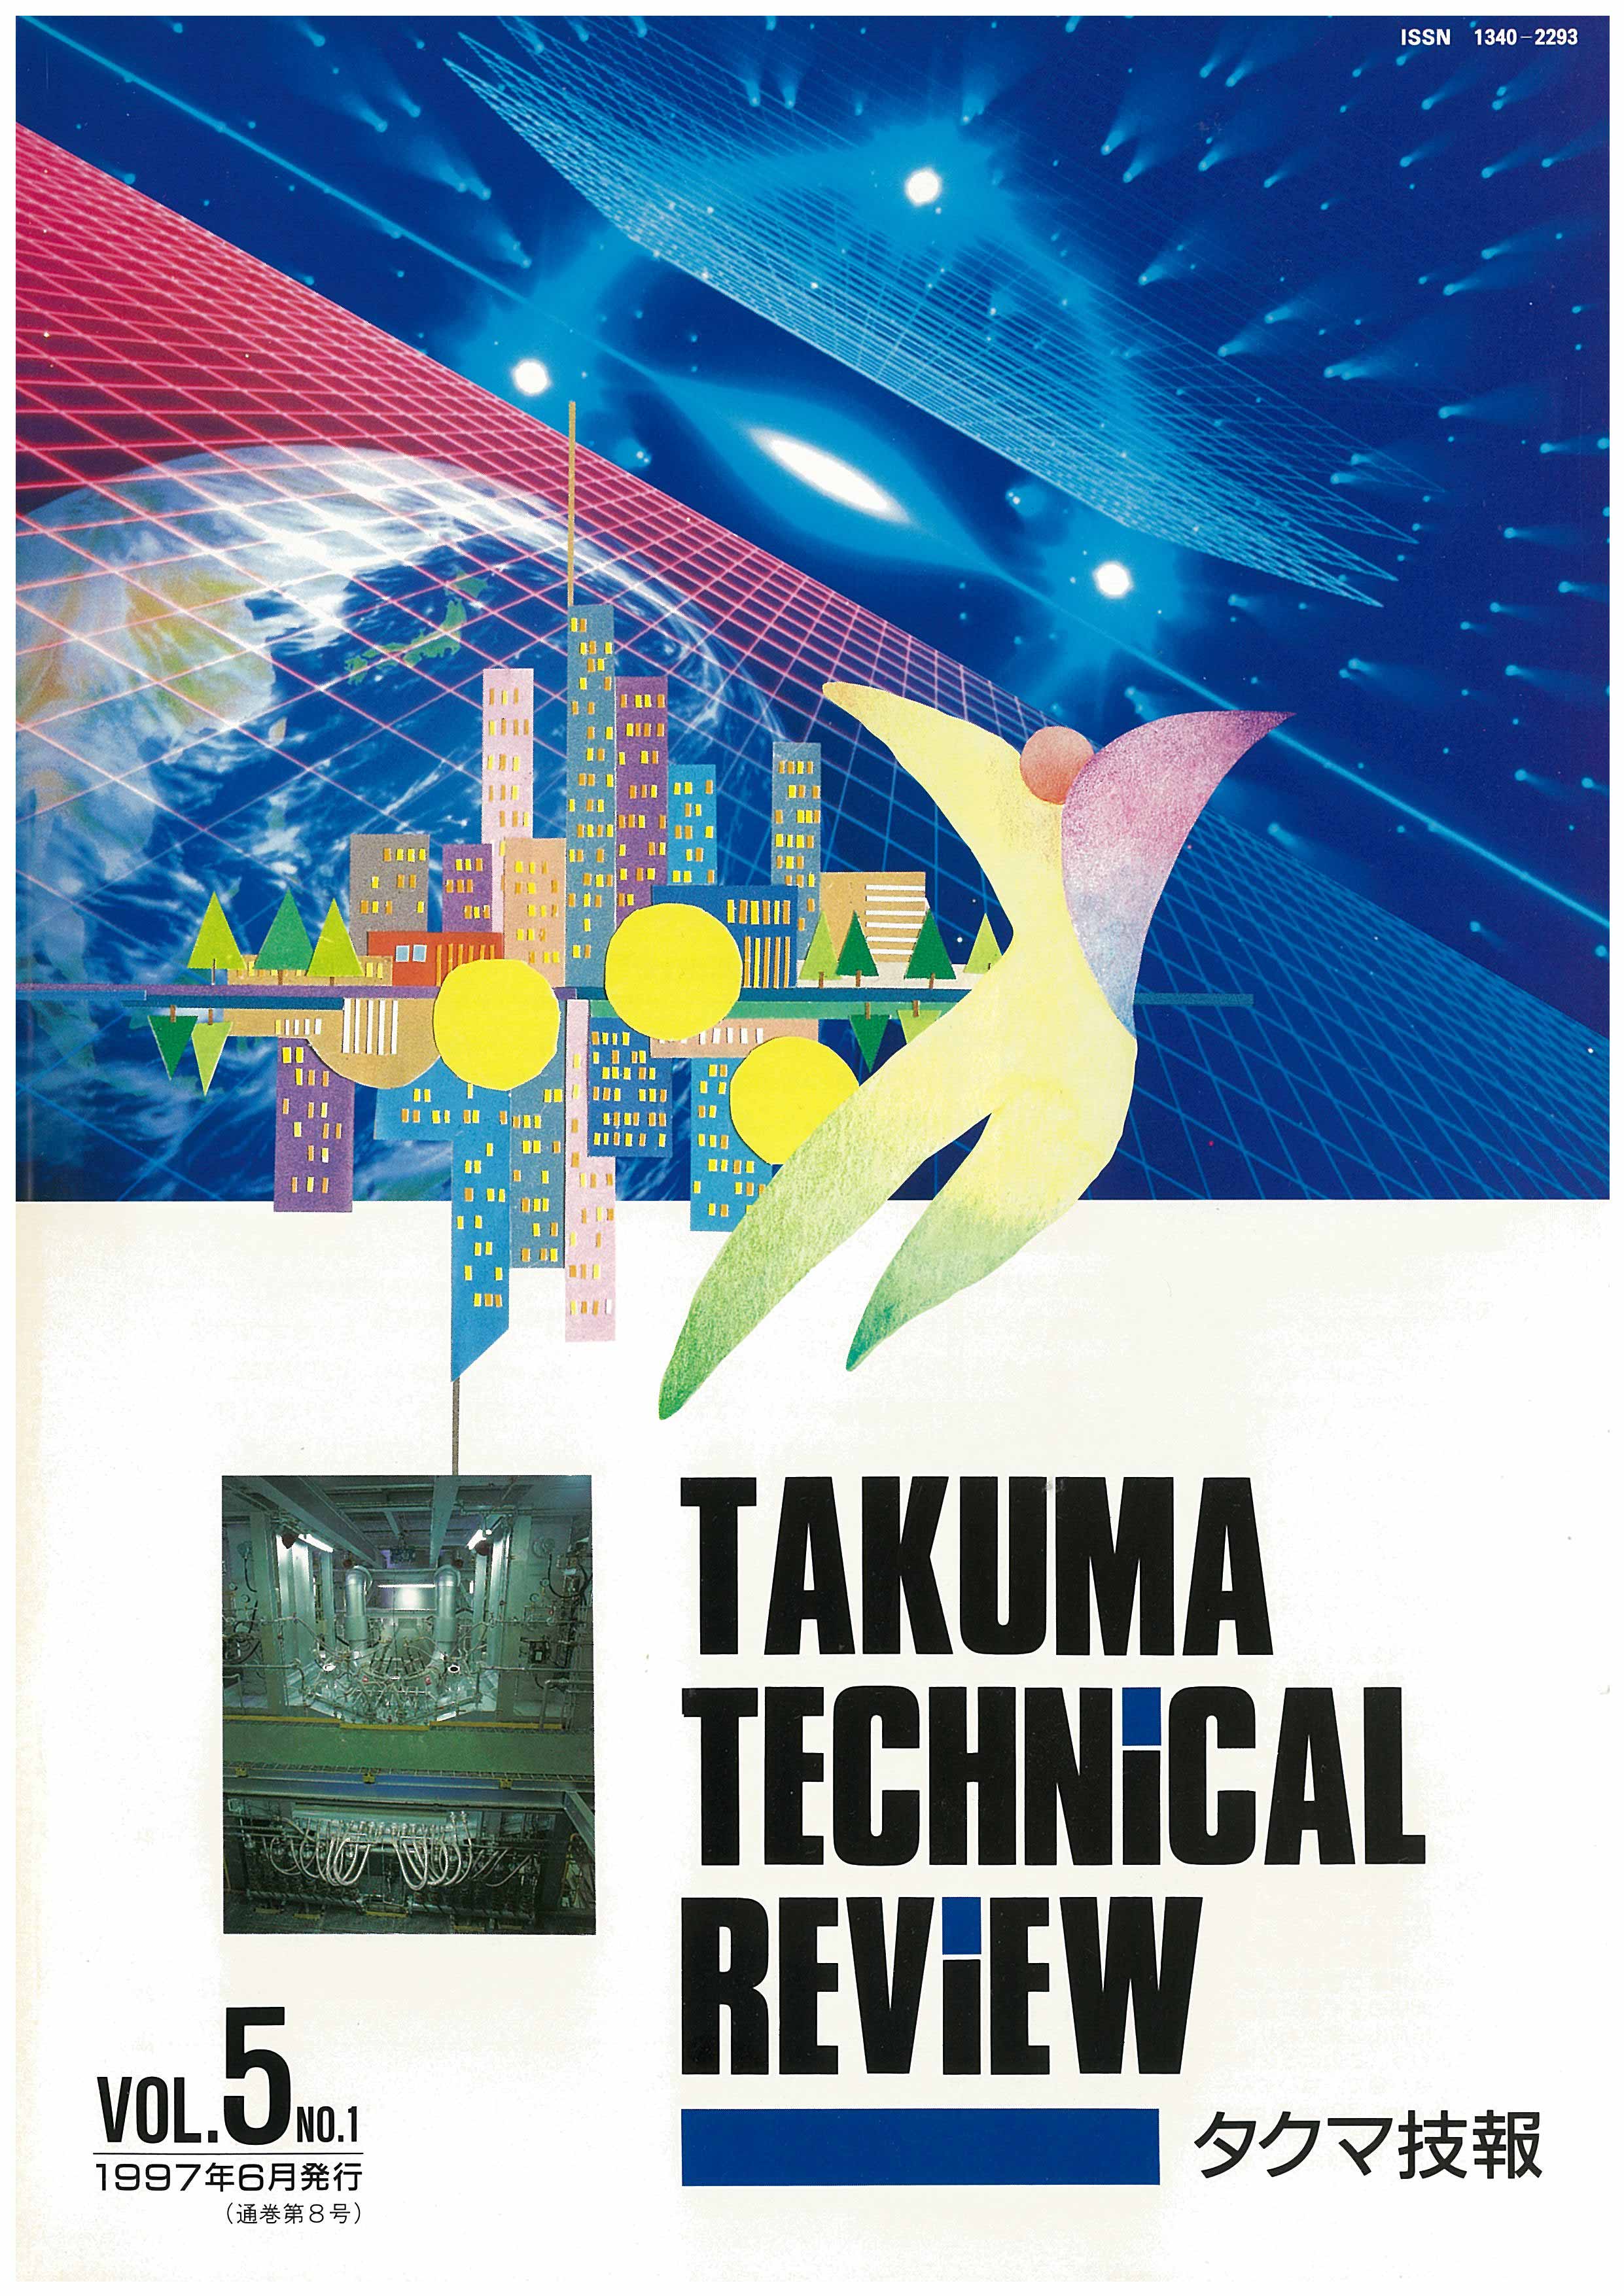 タクマ技報 VOL.5 NO.1（1997年06月発行）